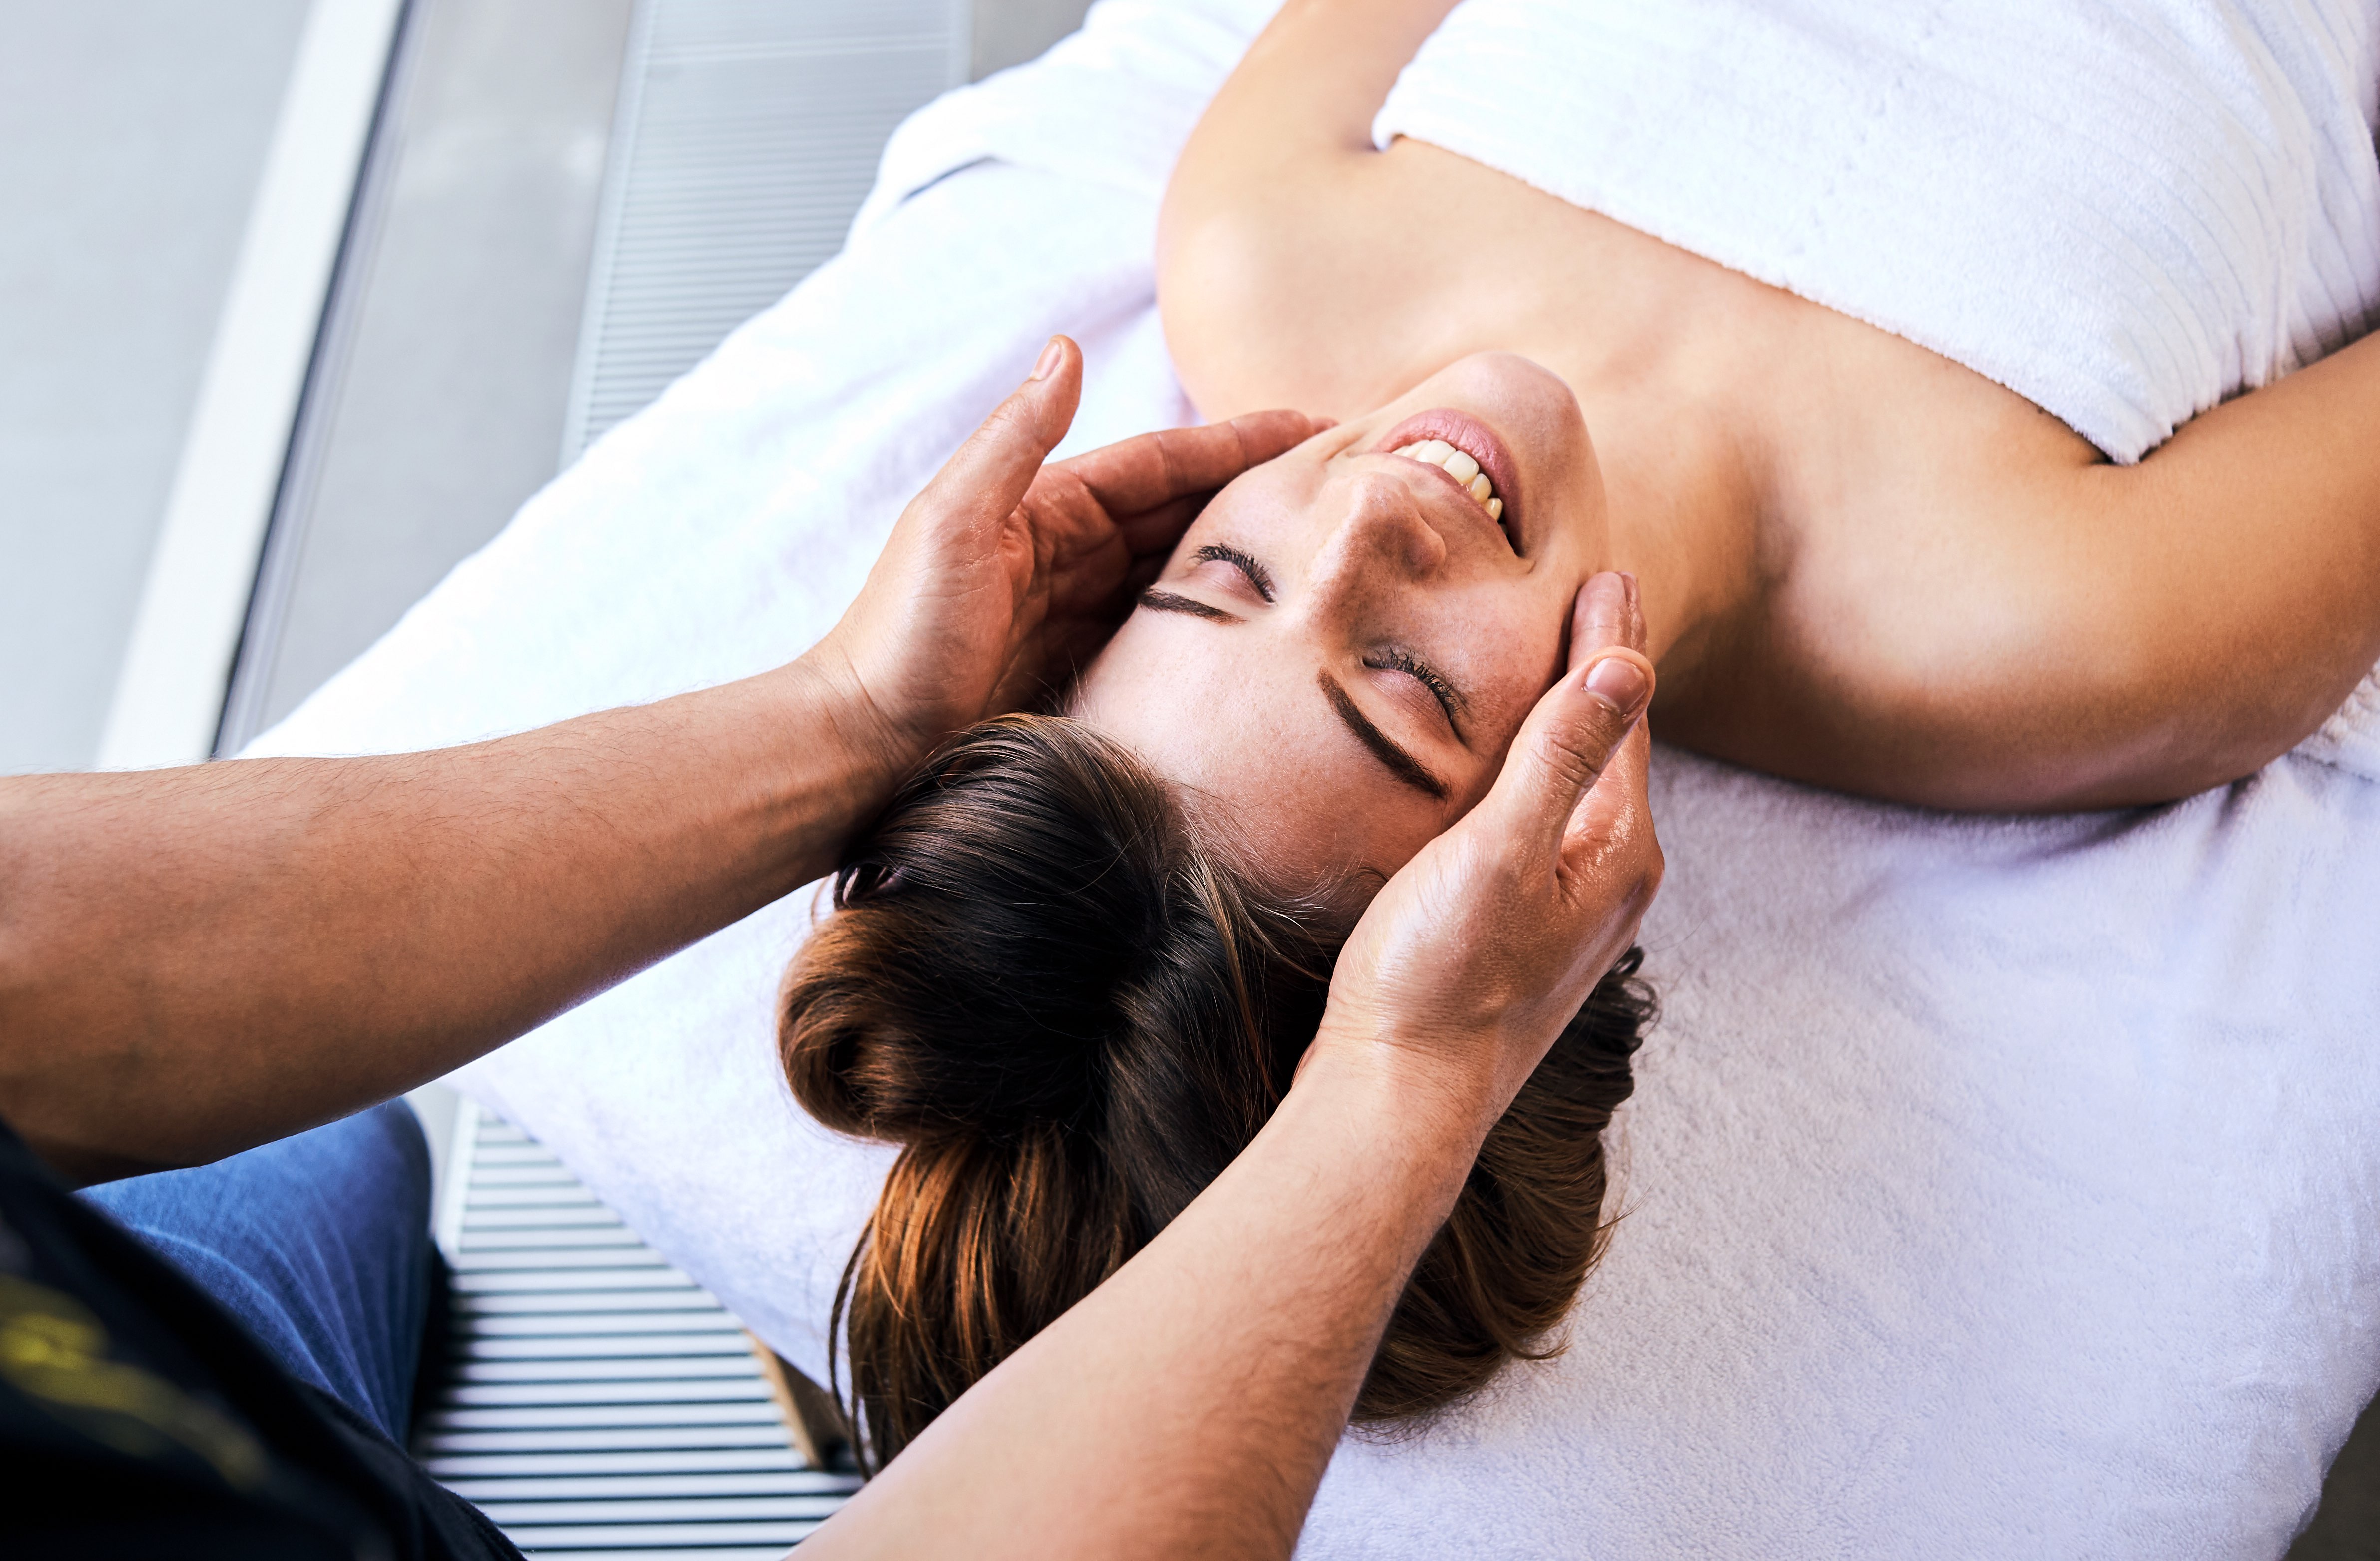 Comment bien choisir ses luminaires ? – Blog Urban Massage